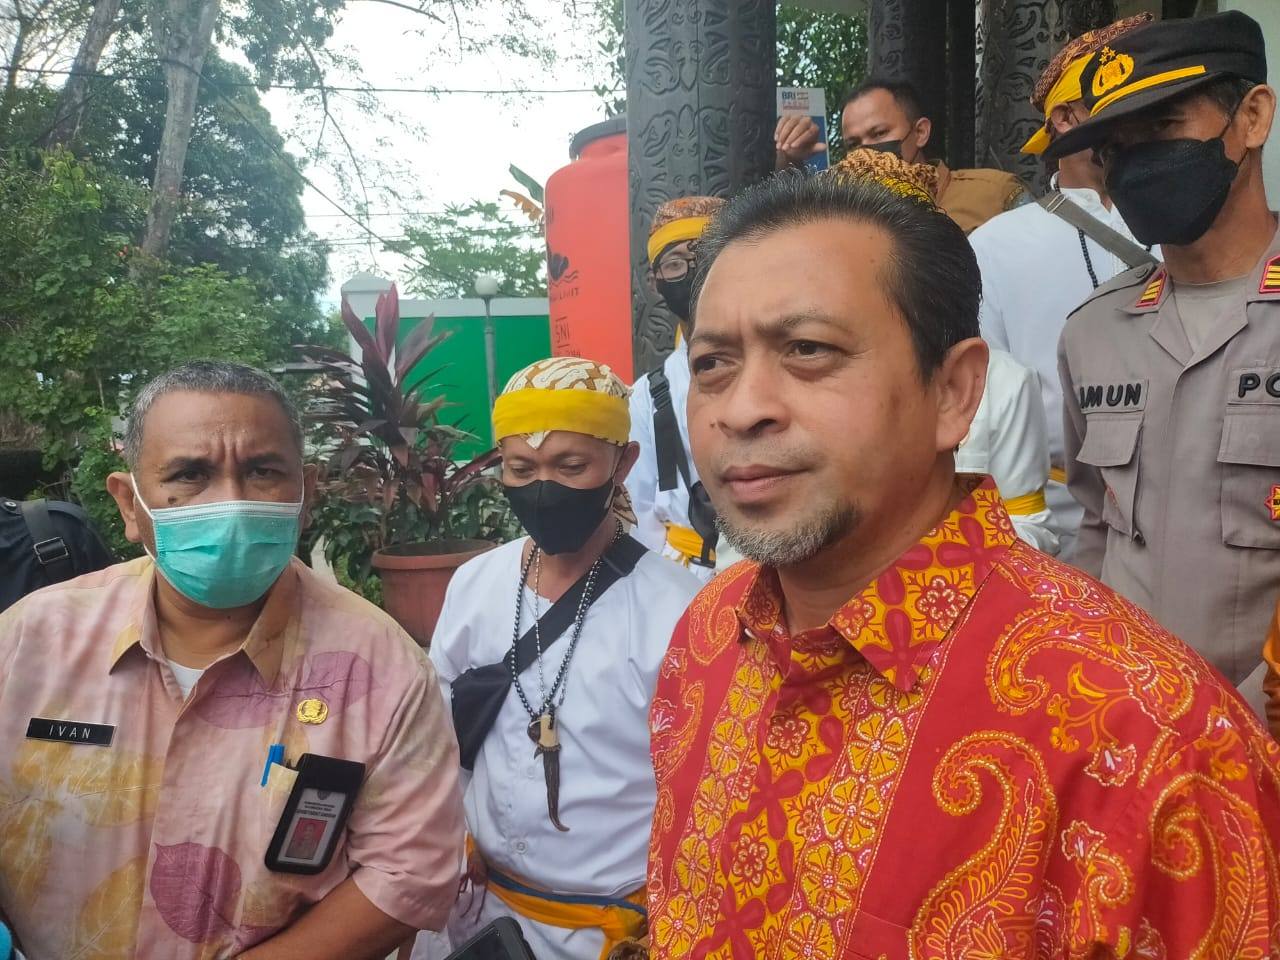 Bikin Warga Kalimantan Marah, Wagub Kaltim Minta Edy Mulyadi Diproses Hukum